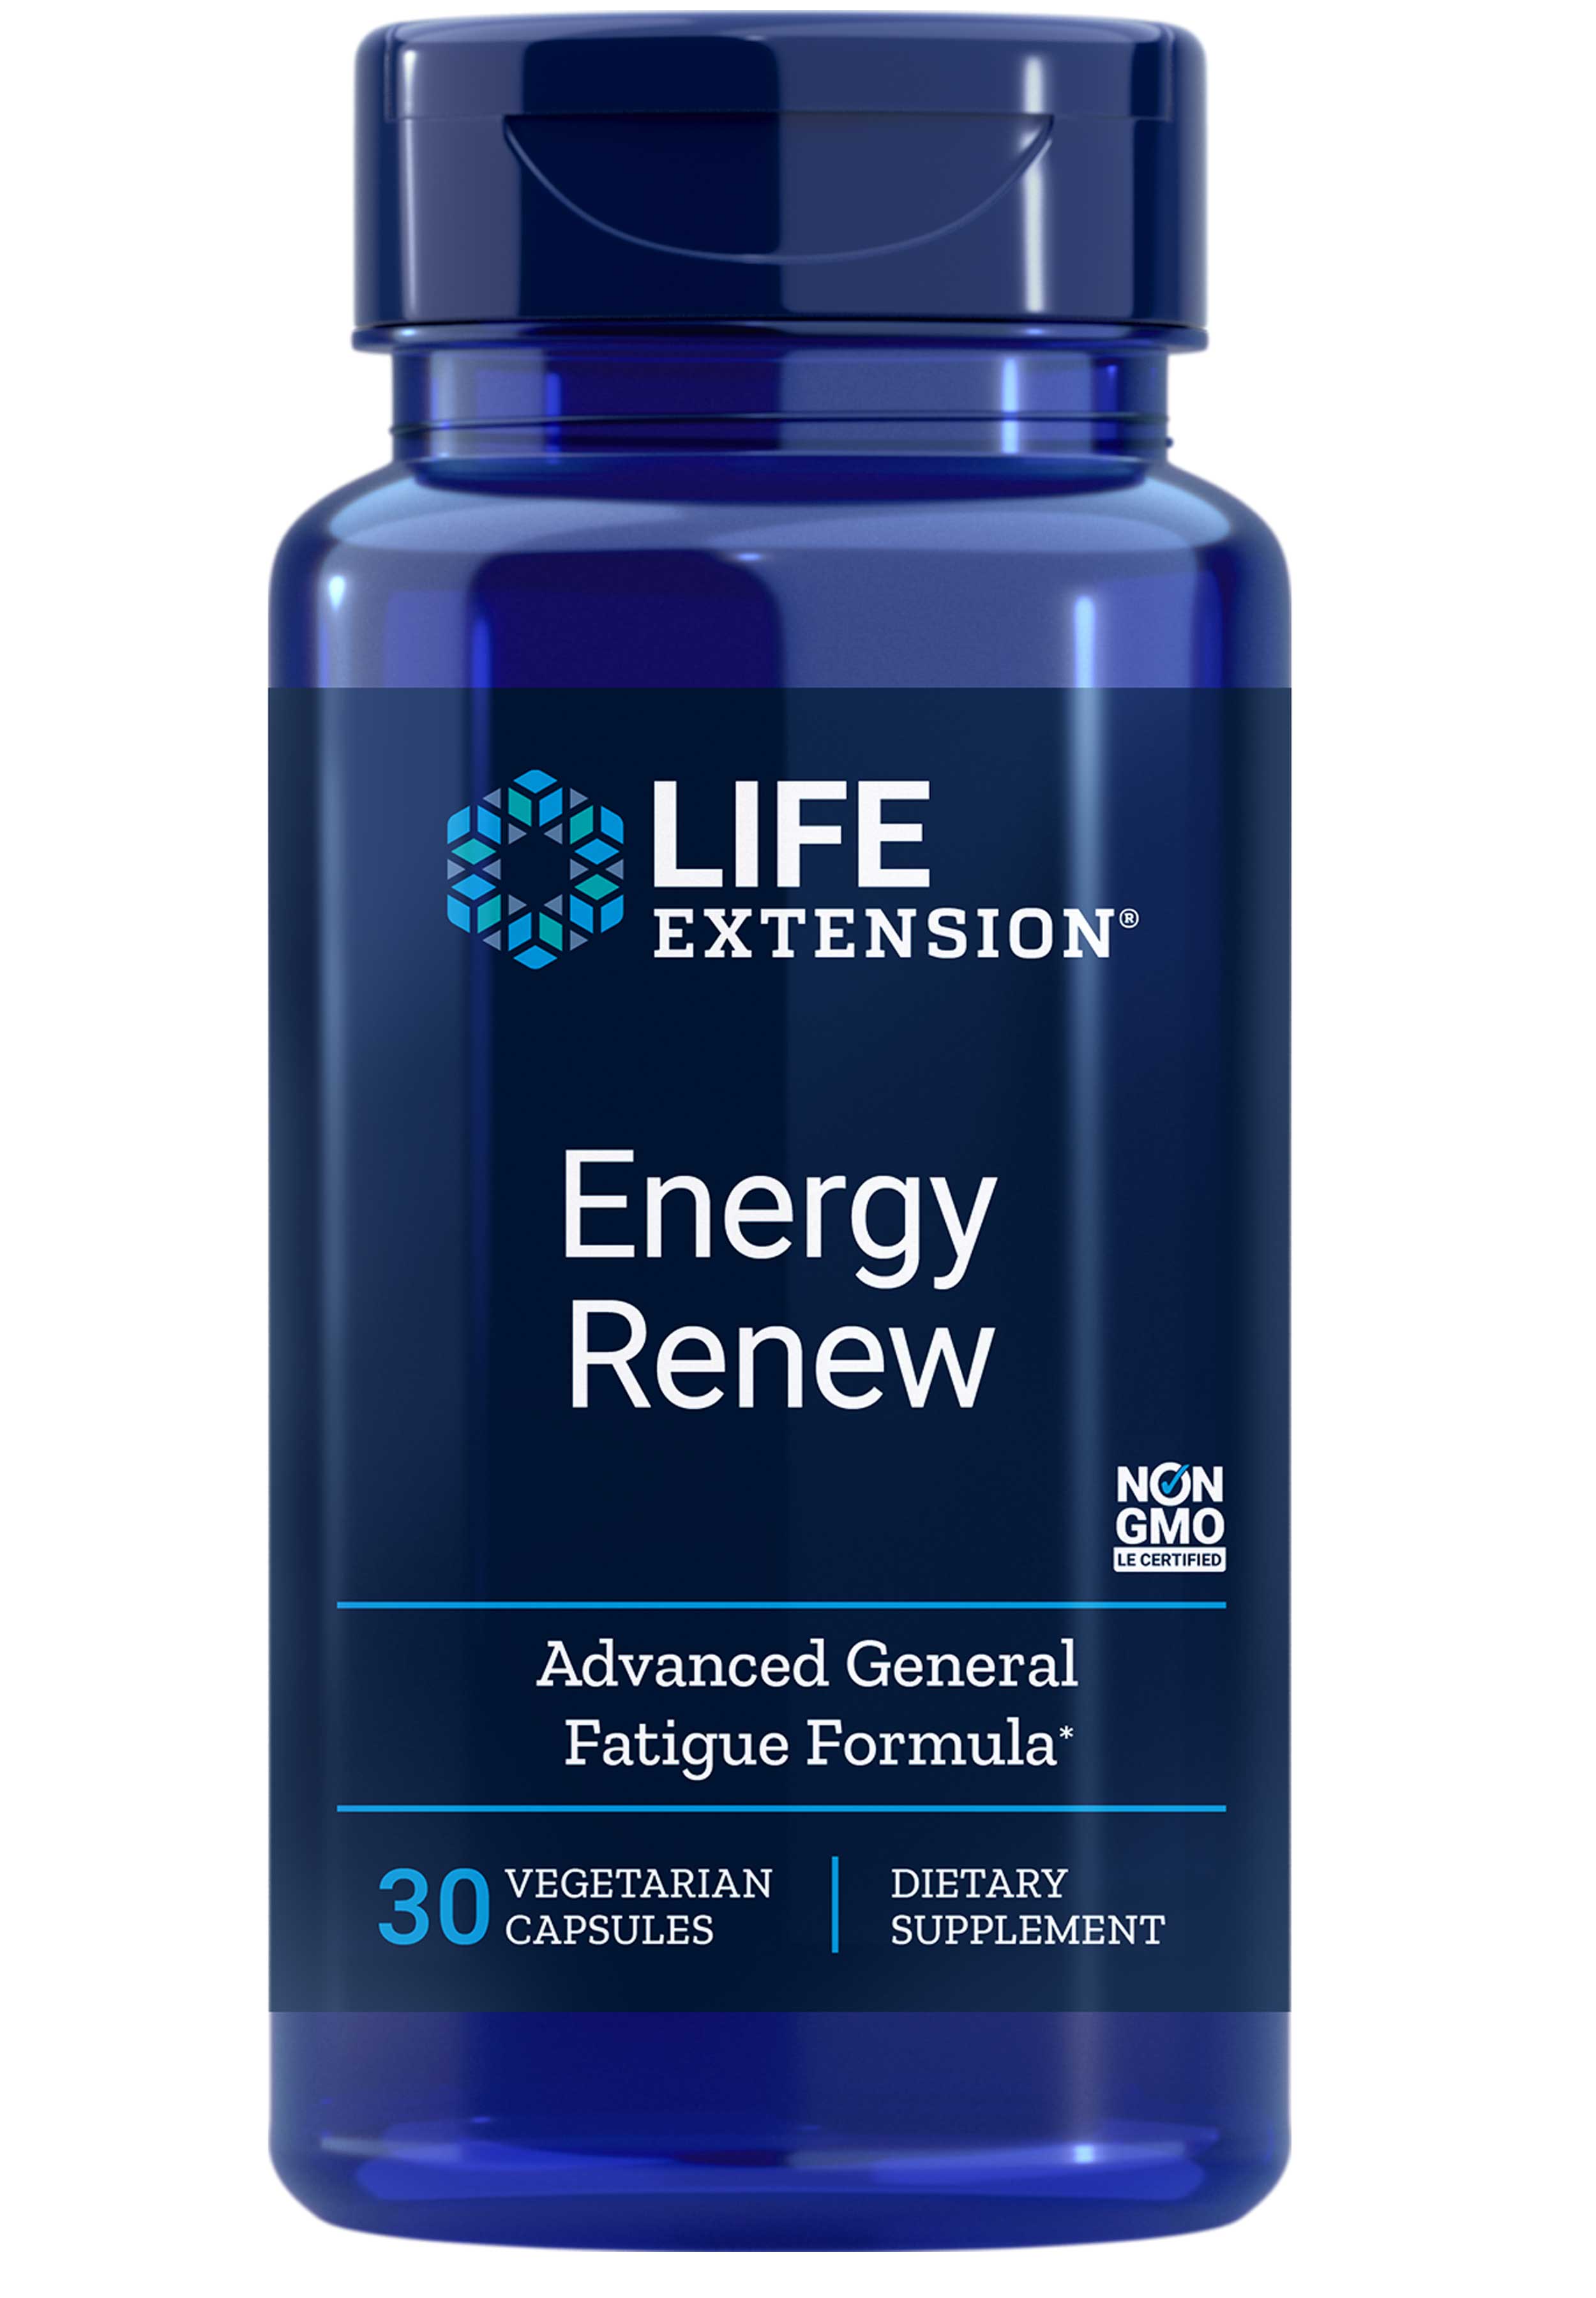 Life Extension Energy Renew